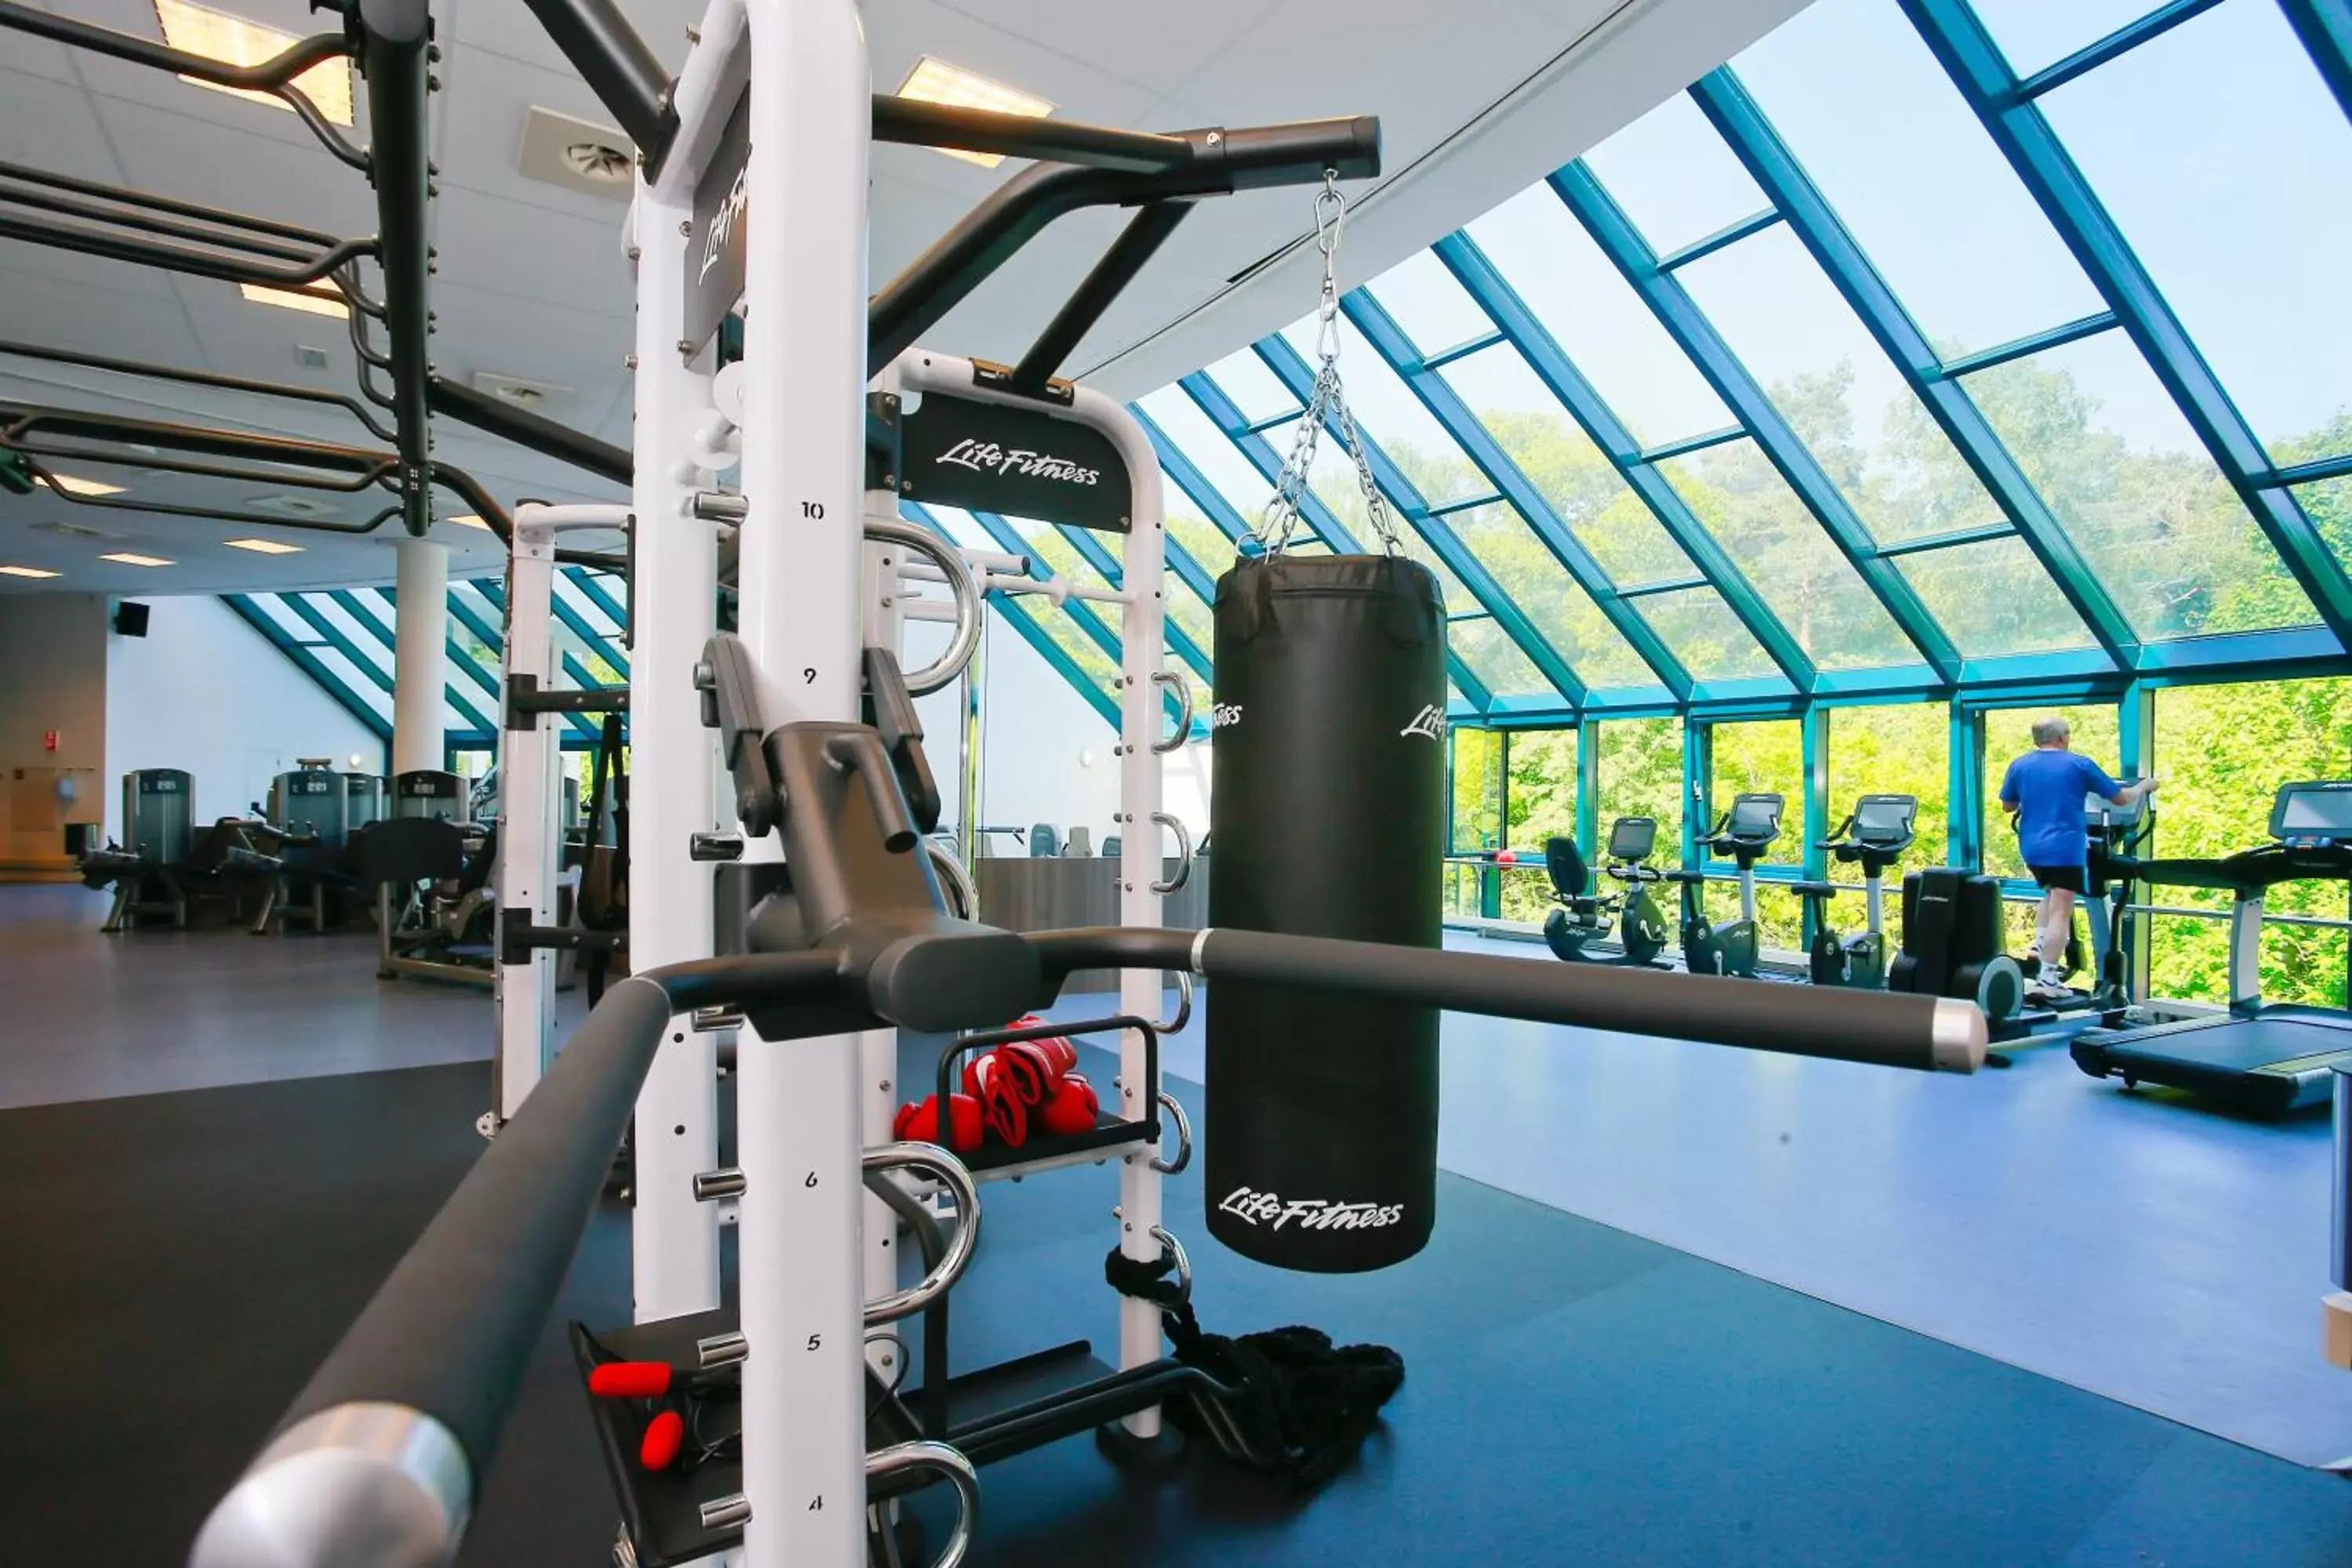 Fitness centre/facilities, Fitness Center/Facilities in Sanadome Hotel & Spa Nijmegen